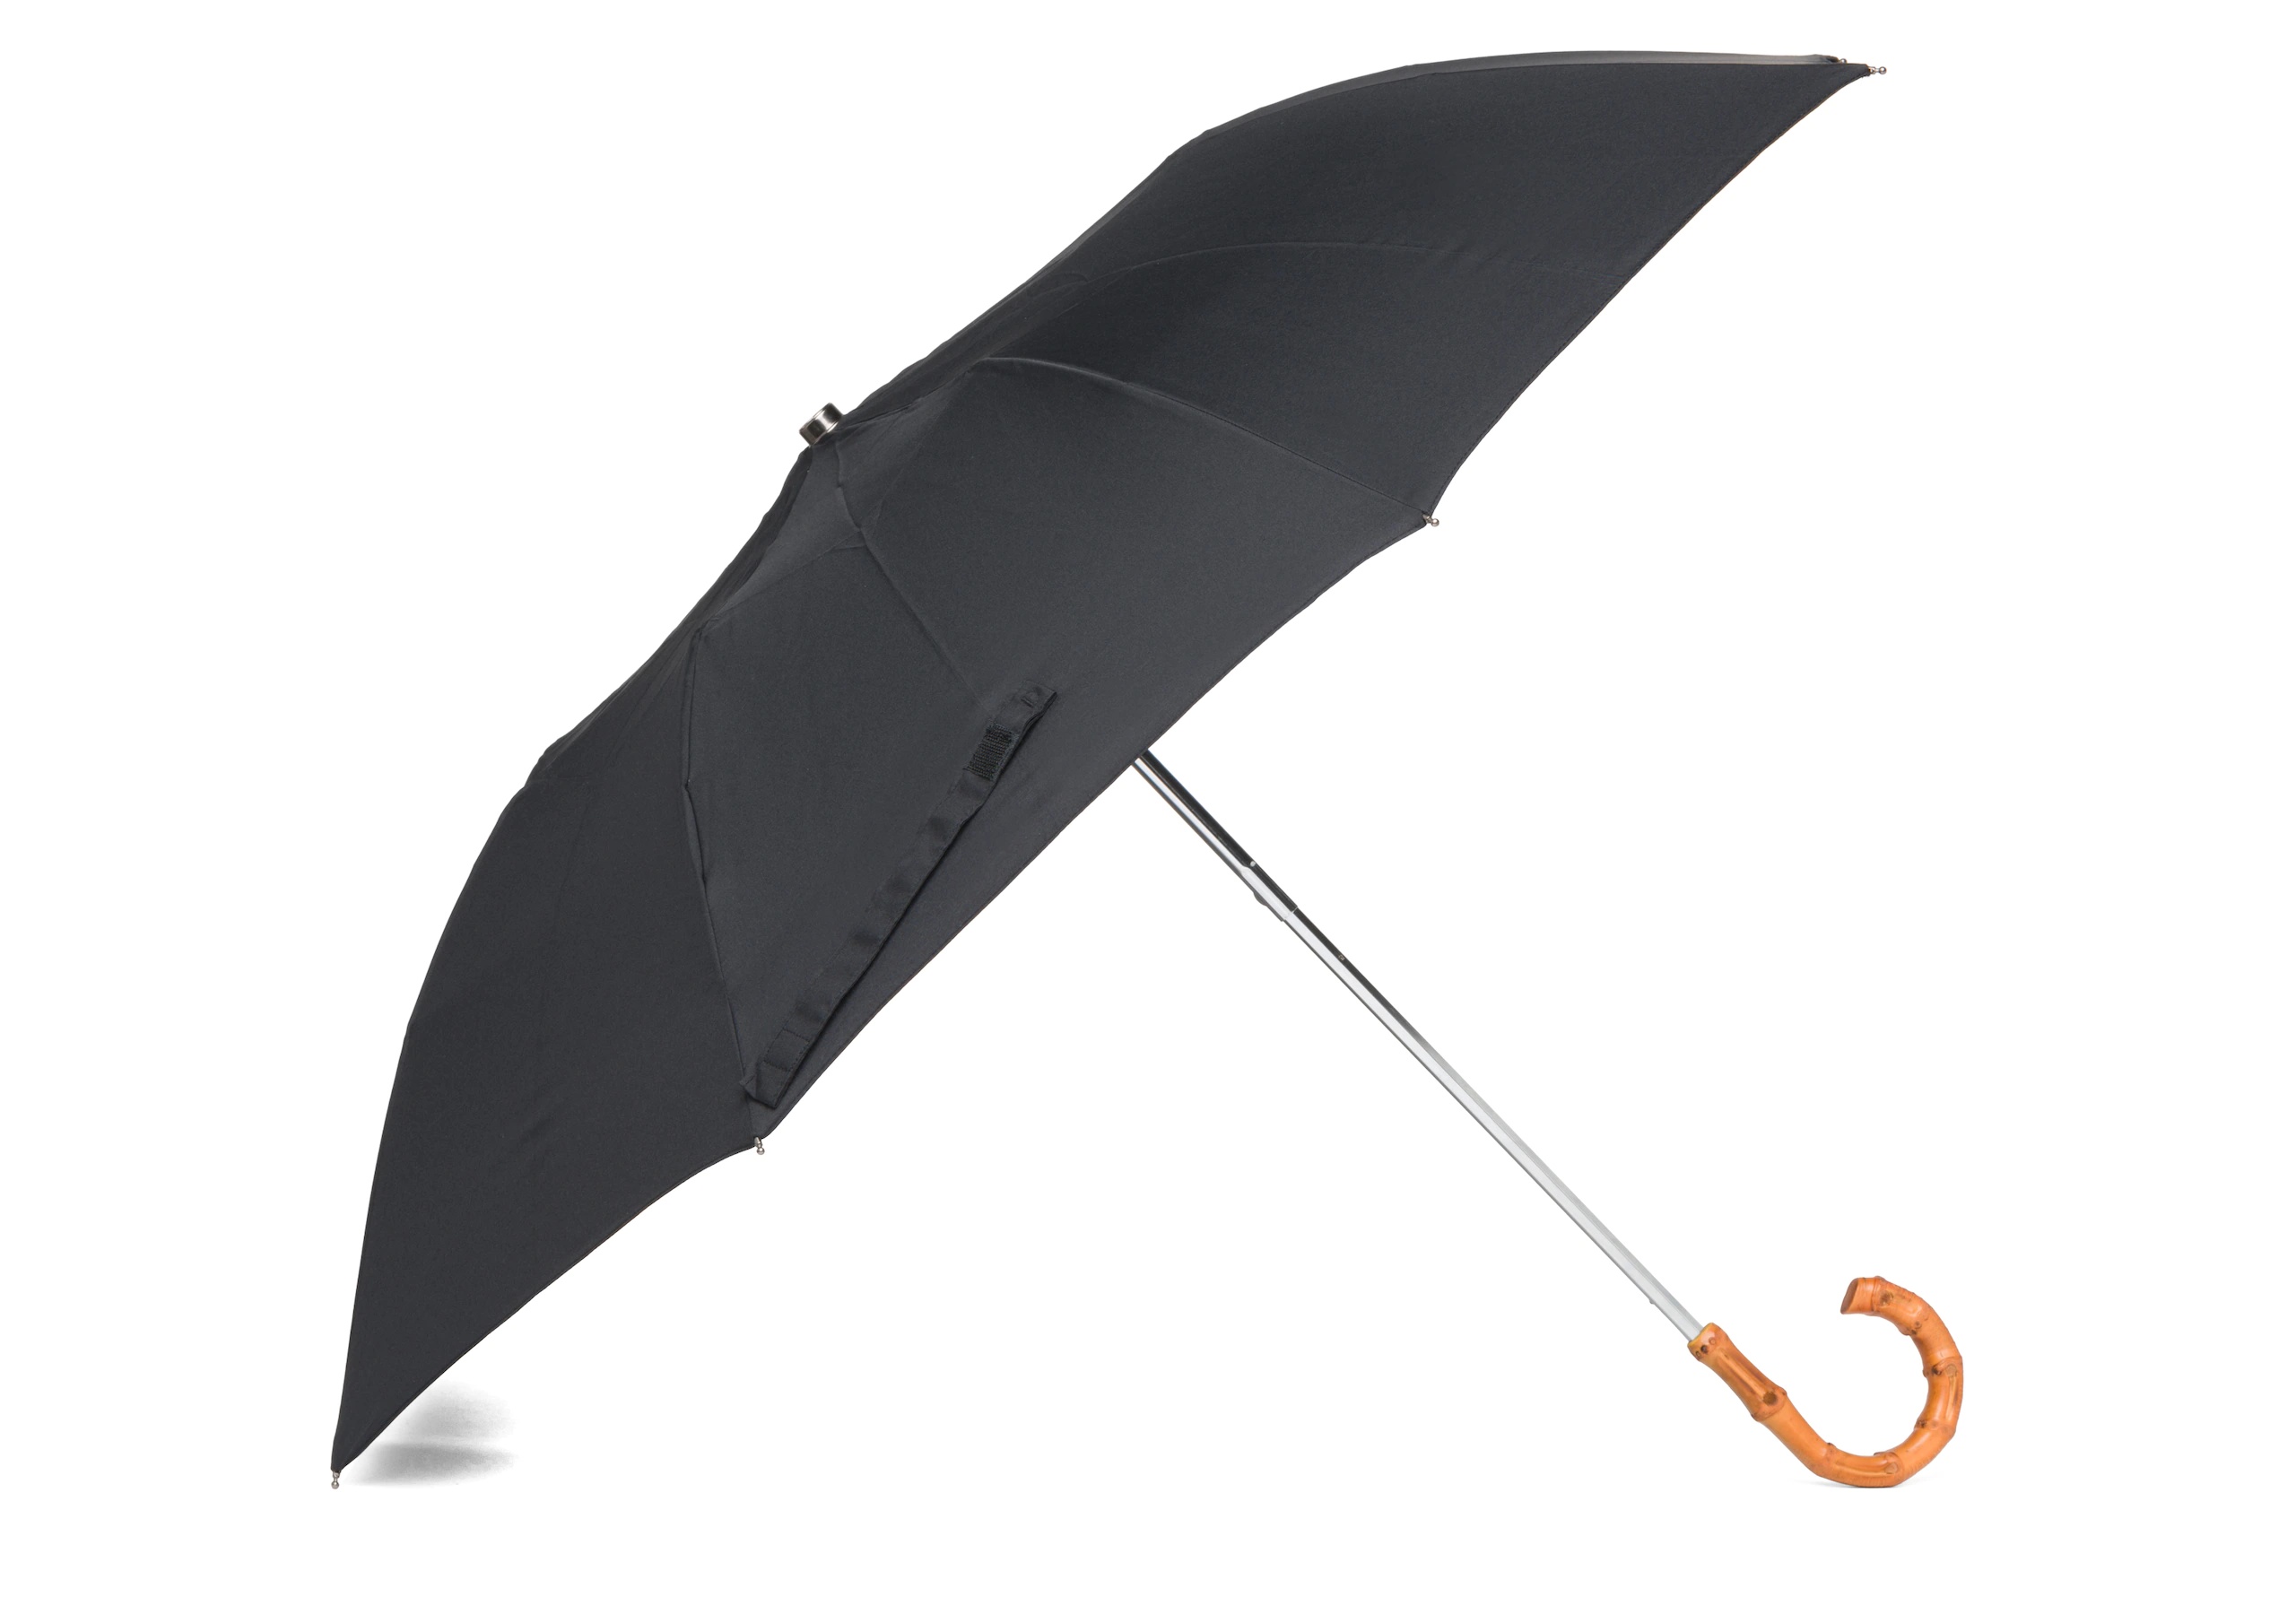 Telescopic umbrella
Women's Whangee Handle Black - 2